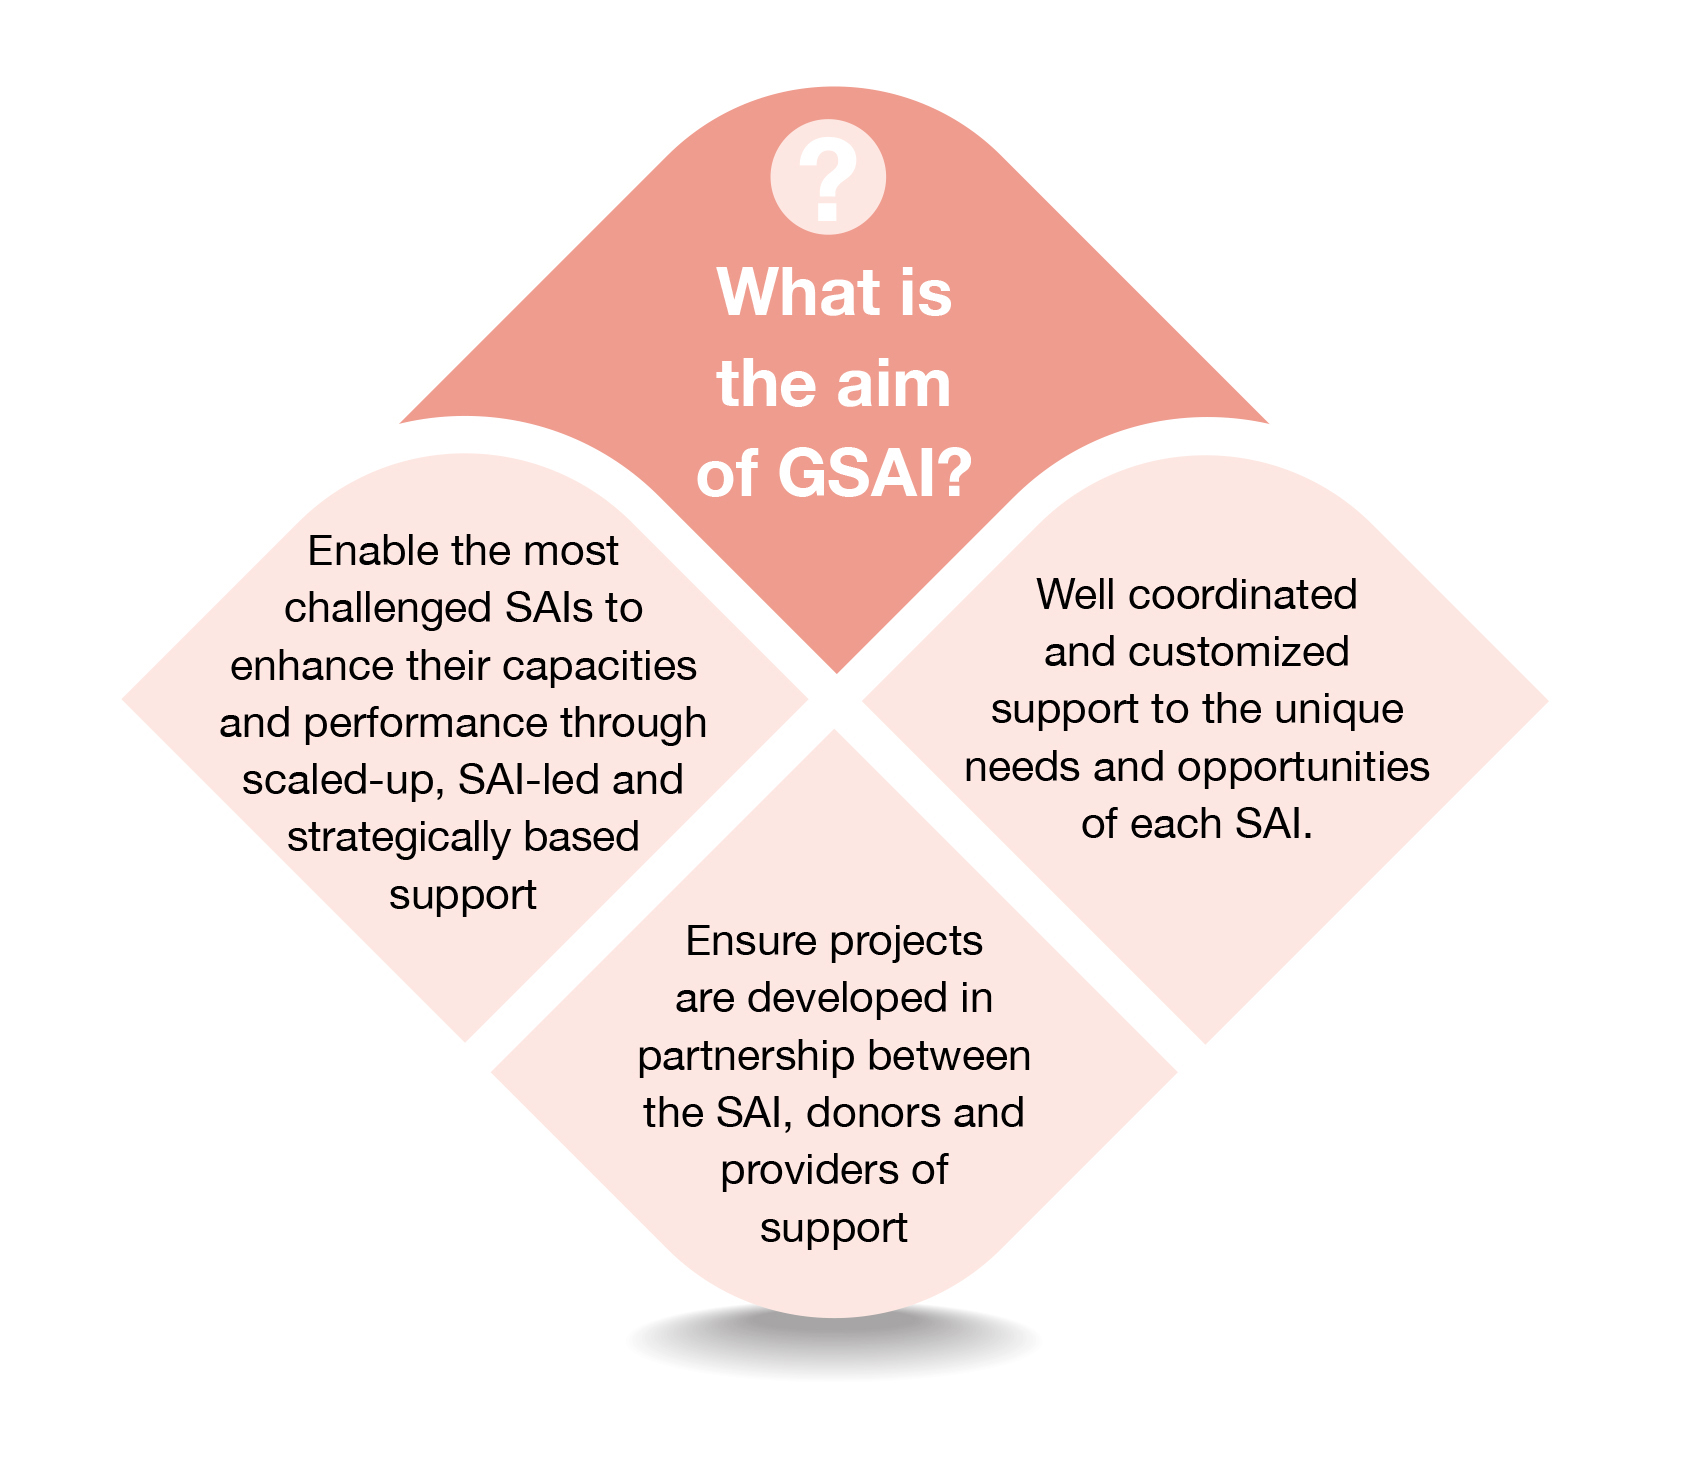 GSAI aim graphic